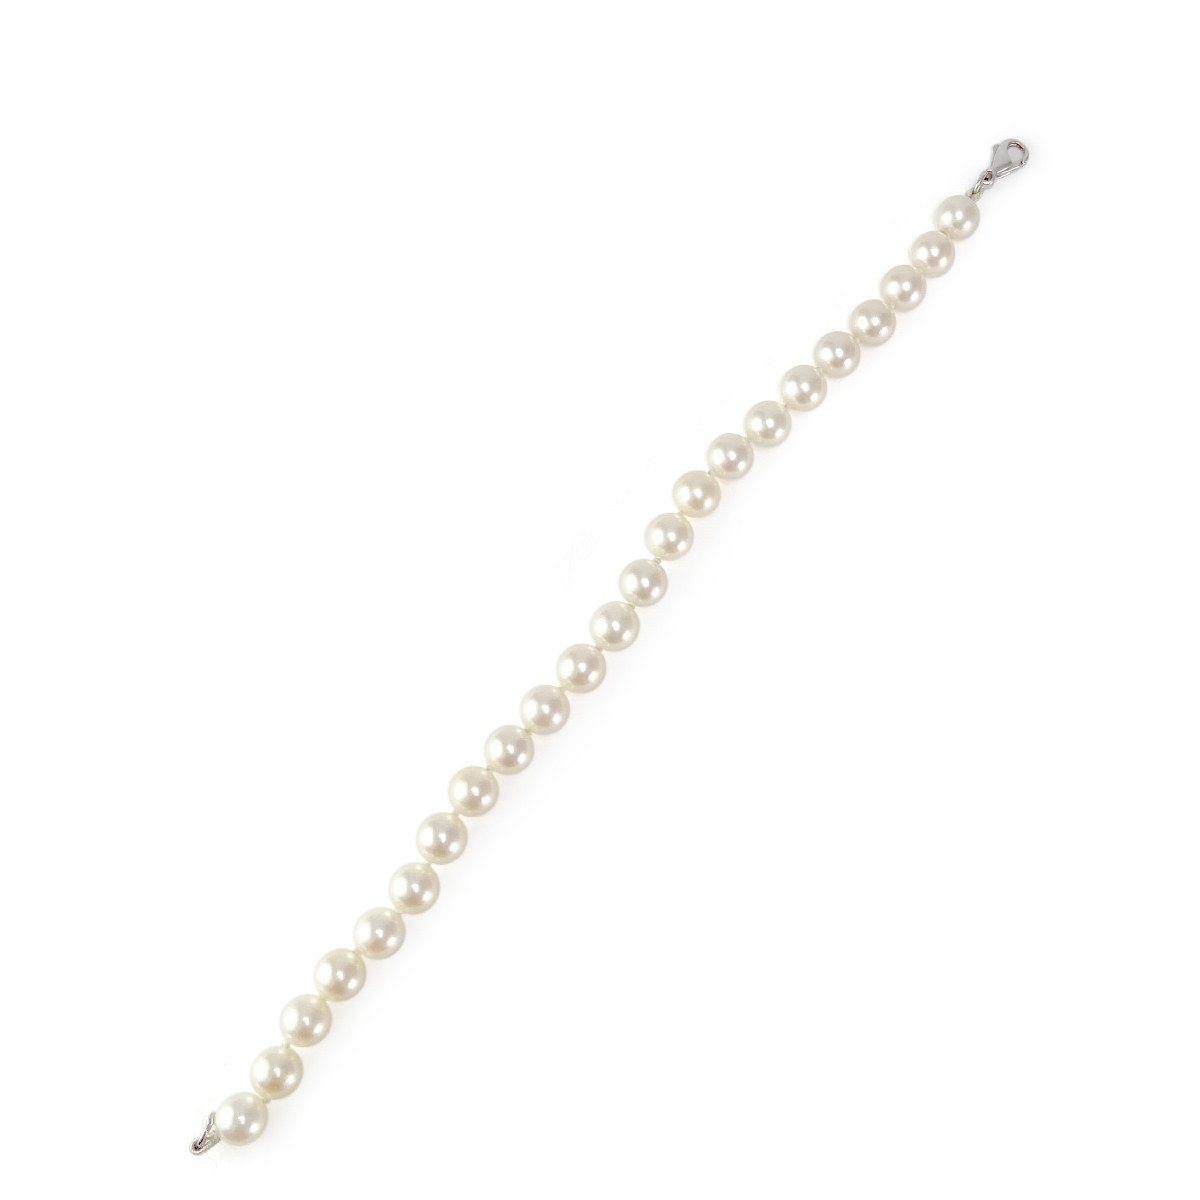 Bracelet d'occasion or 750 blanc perles de culture du japon 18 cm - vue 2